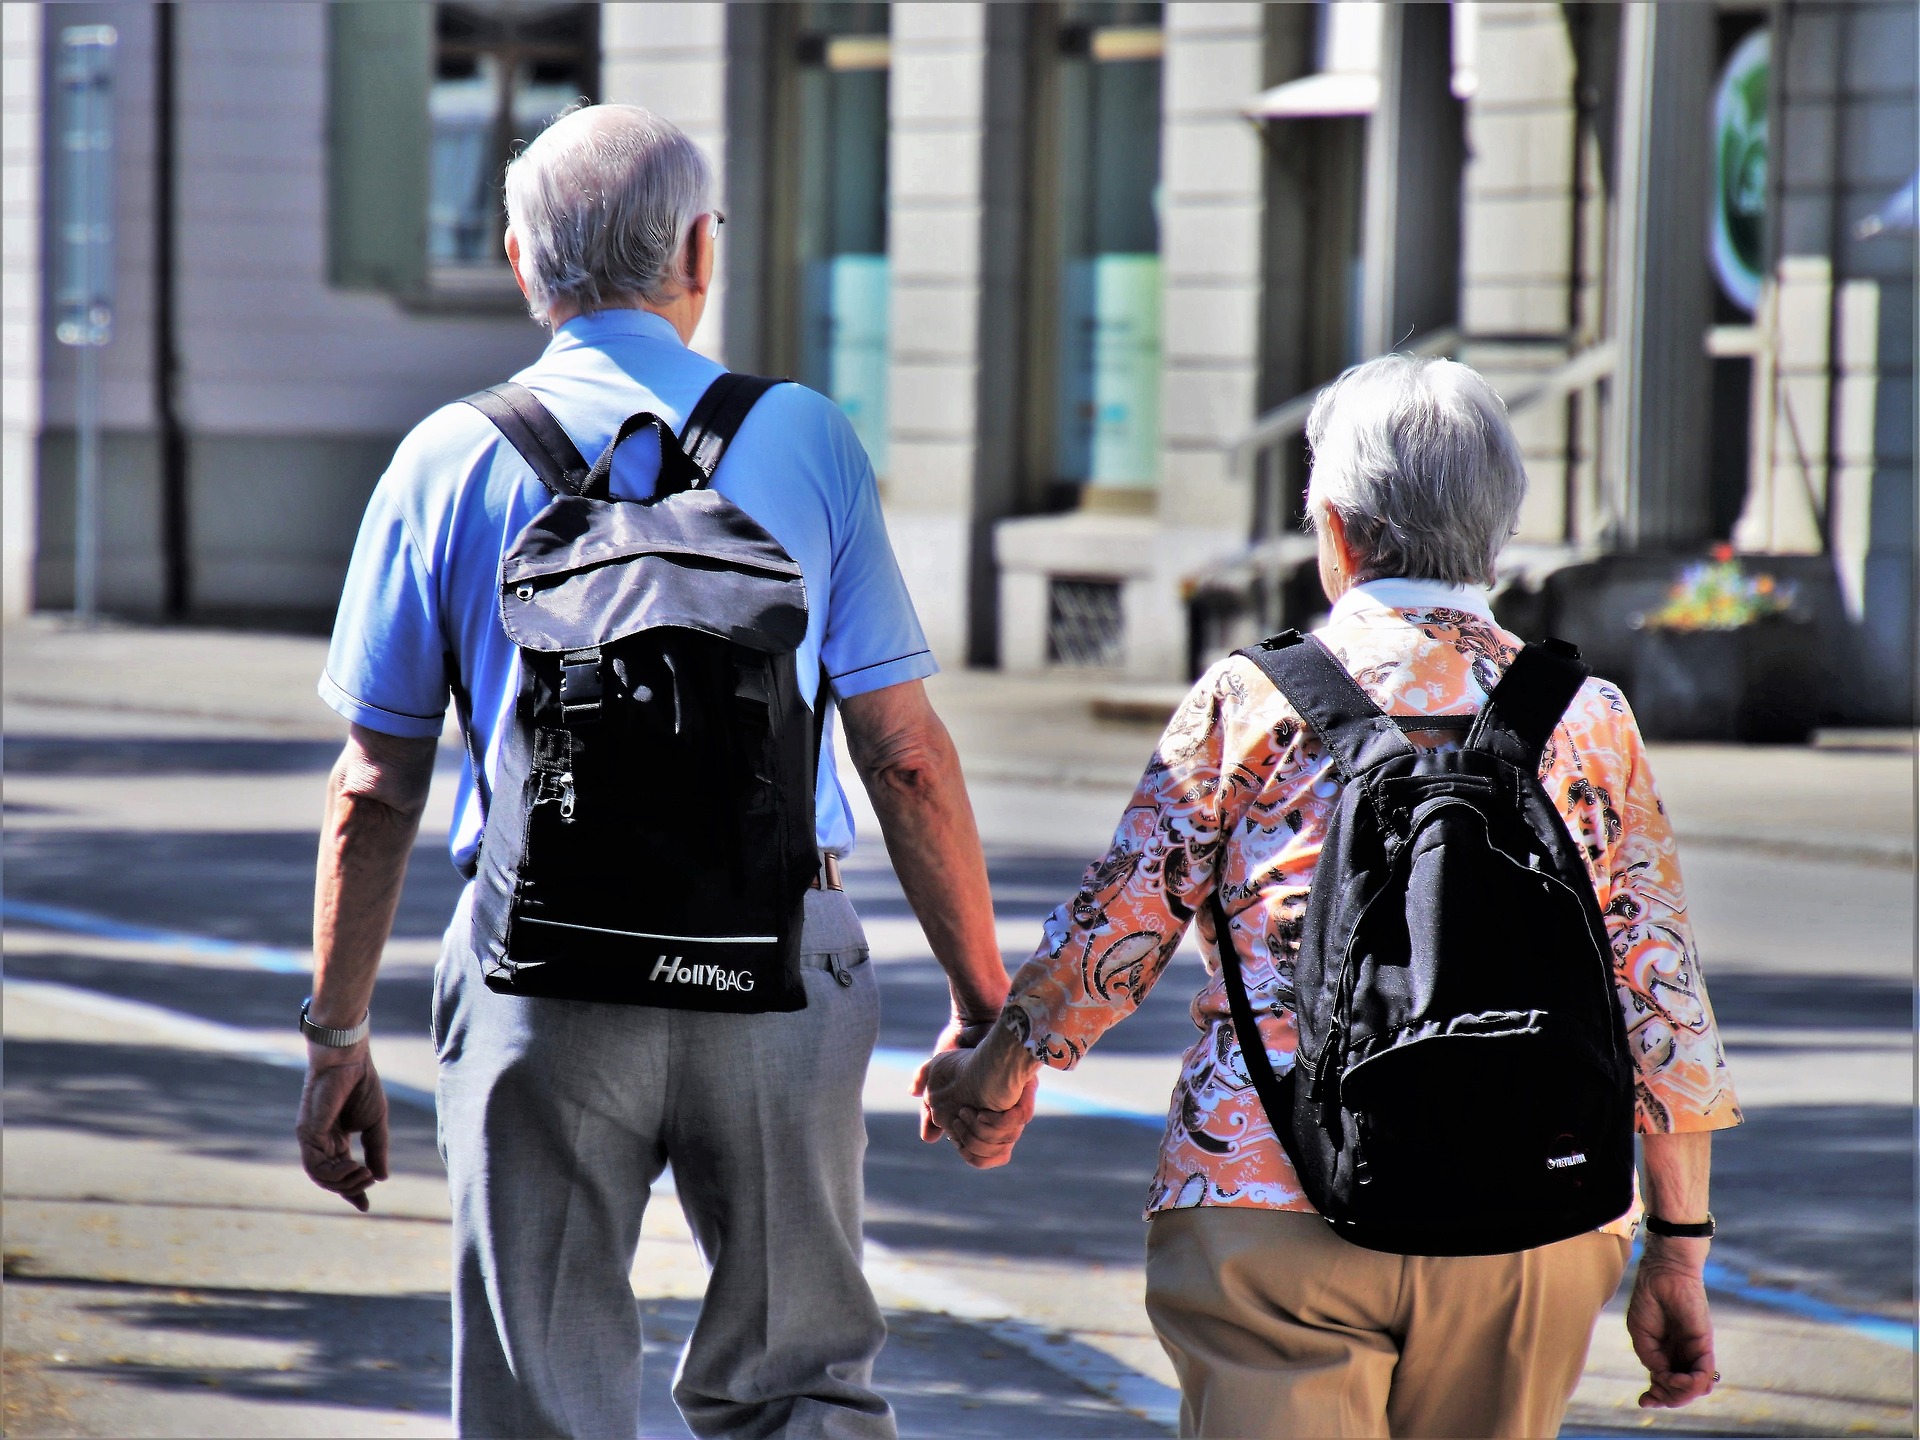 В Європі, пенсіонери, вийшовши на пенсію, їздять світом. В Україні — йдуть по світу з торбами. Прикро, але це правда